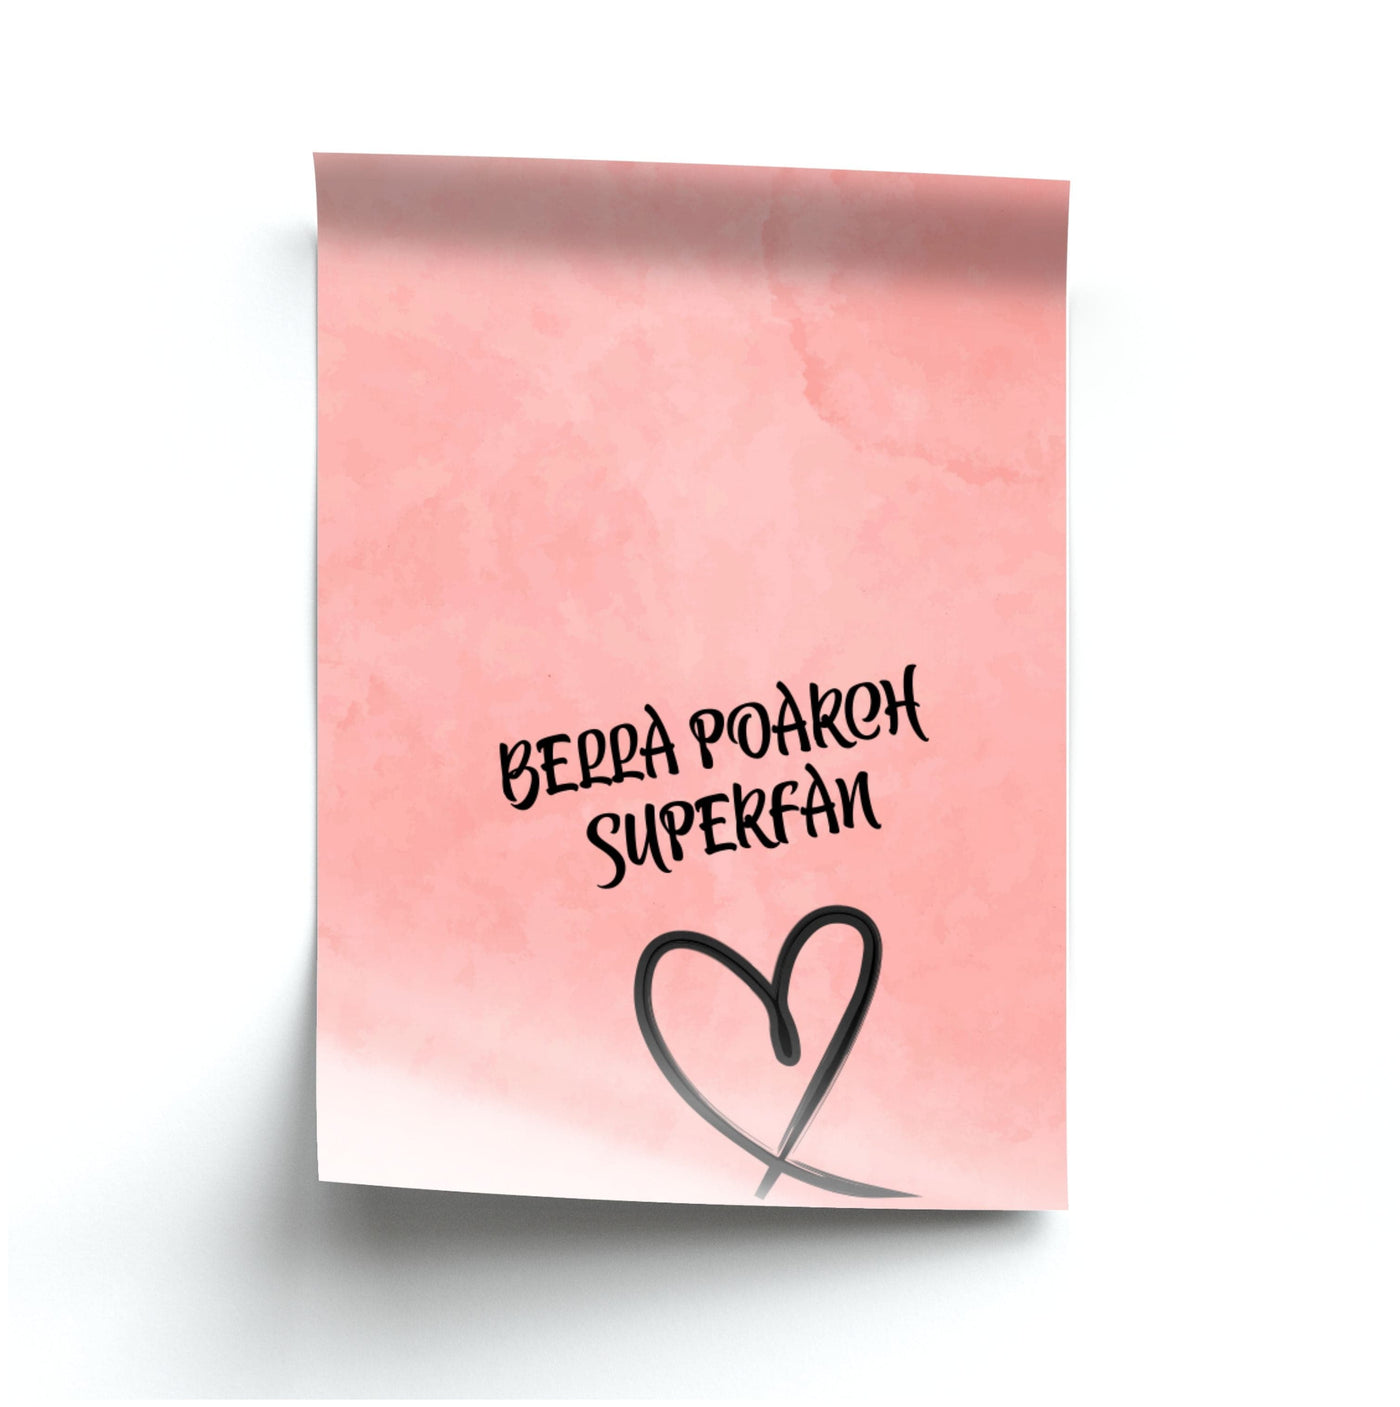 Bella Poarch Superfan Poster